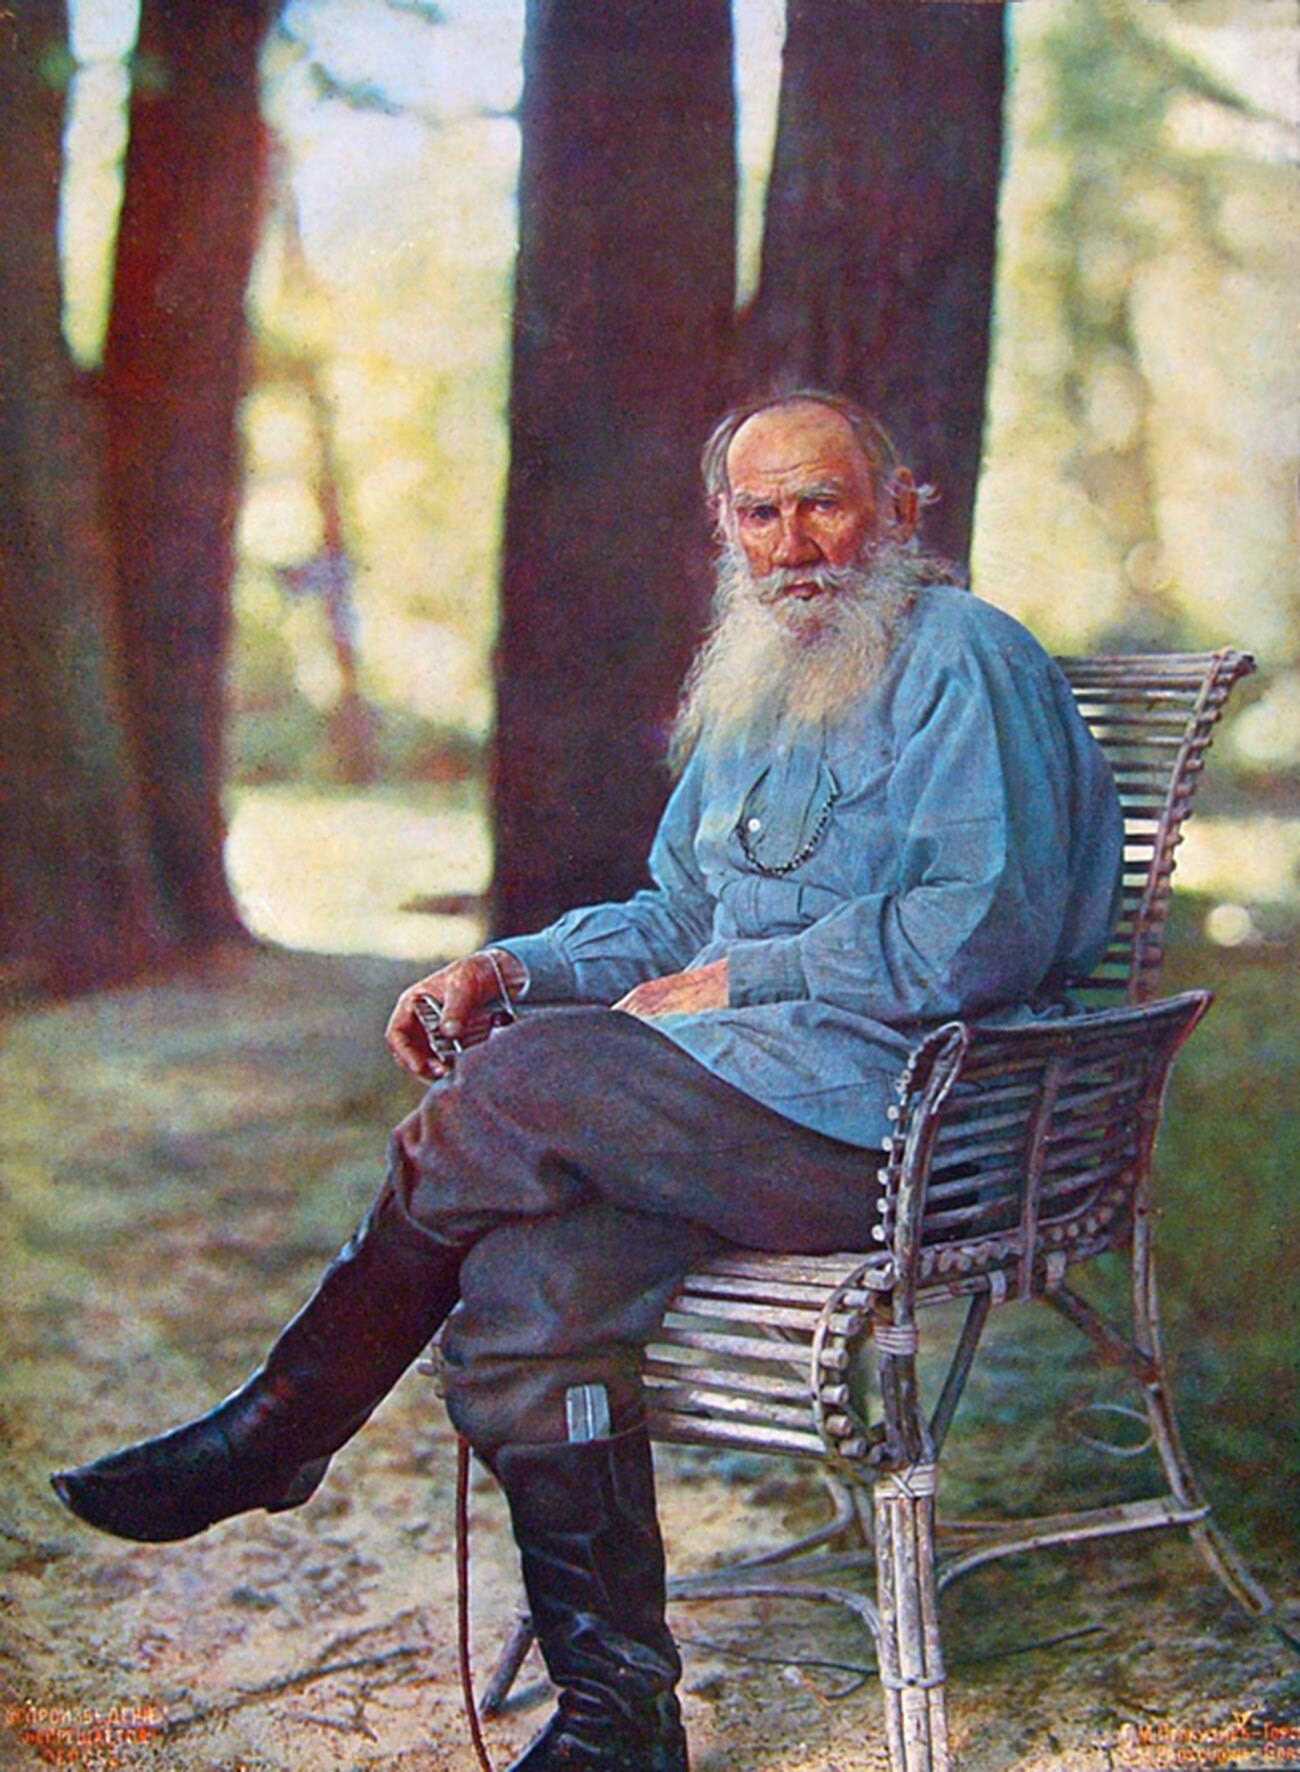 Yásnaia Poliana. Retrato en color de León Tolstói tomado tras su regreso de la cabalgata. Publicado por primera vez en el número de agosto de Notas de la Sociedad Técnica Imperial Rusa. 23 de mayo de 1908. 